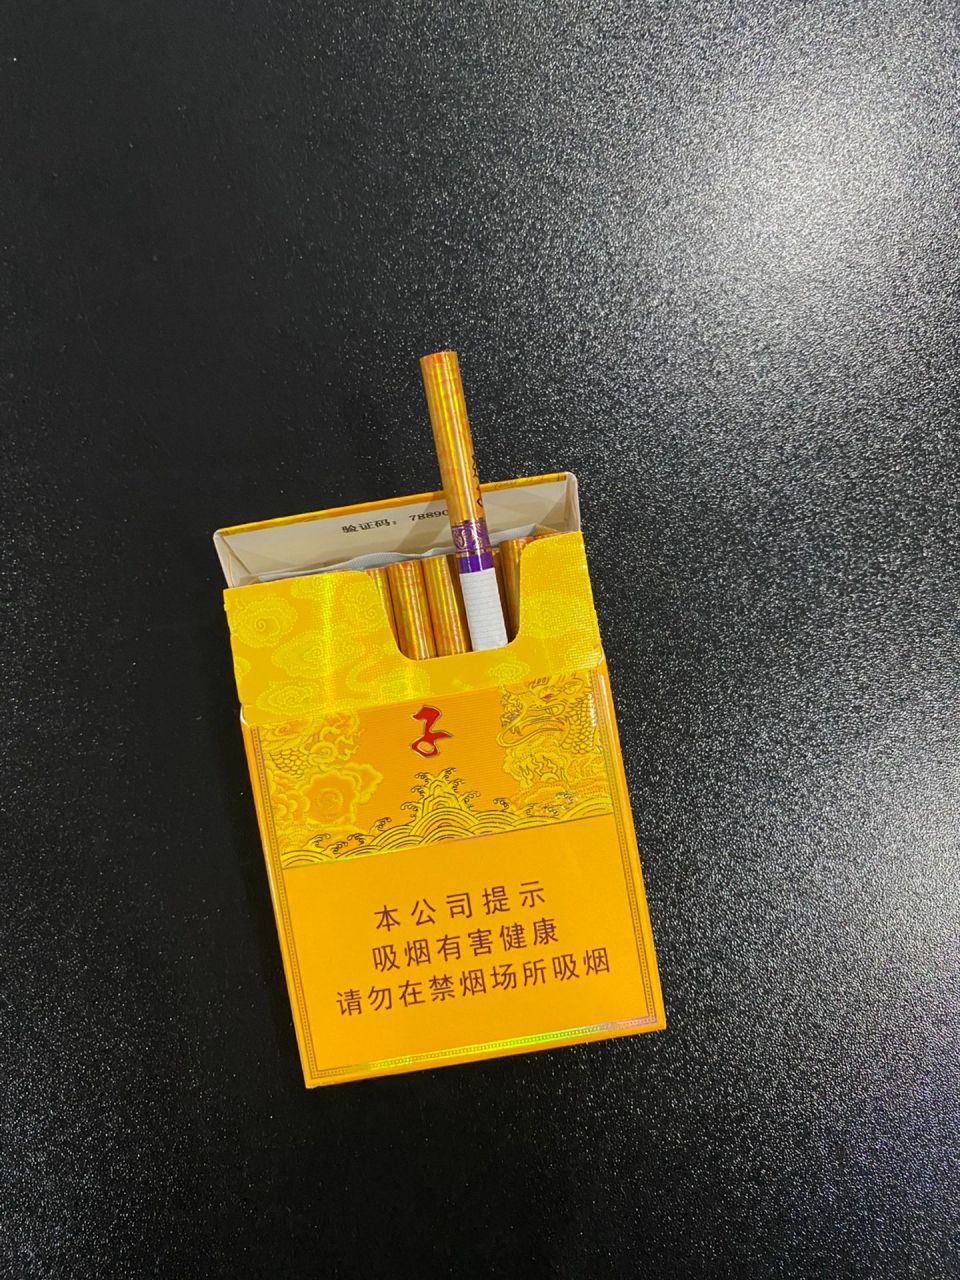 天子中支 天子品牌是重庆中烟的高端品牌,在近万份的市场调查问卷中